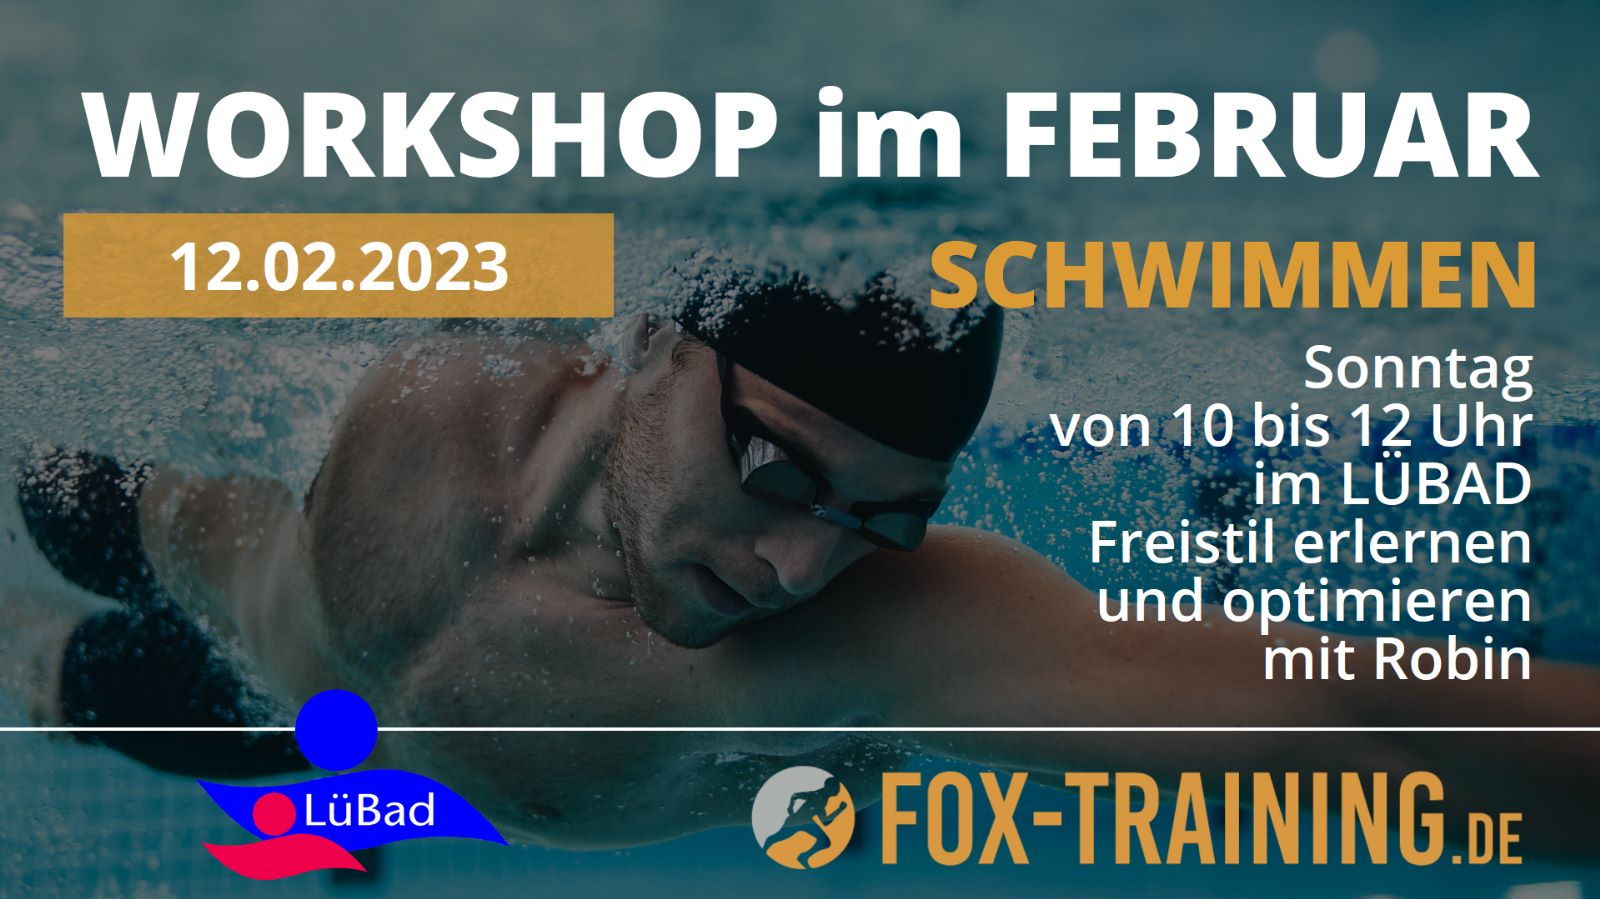 Workshop-Schwimmen-23